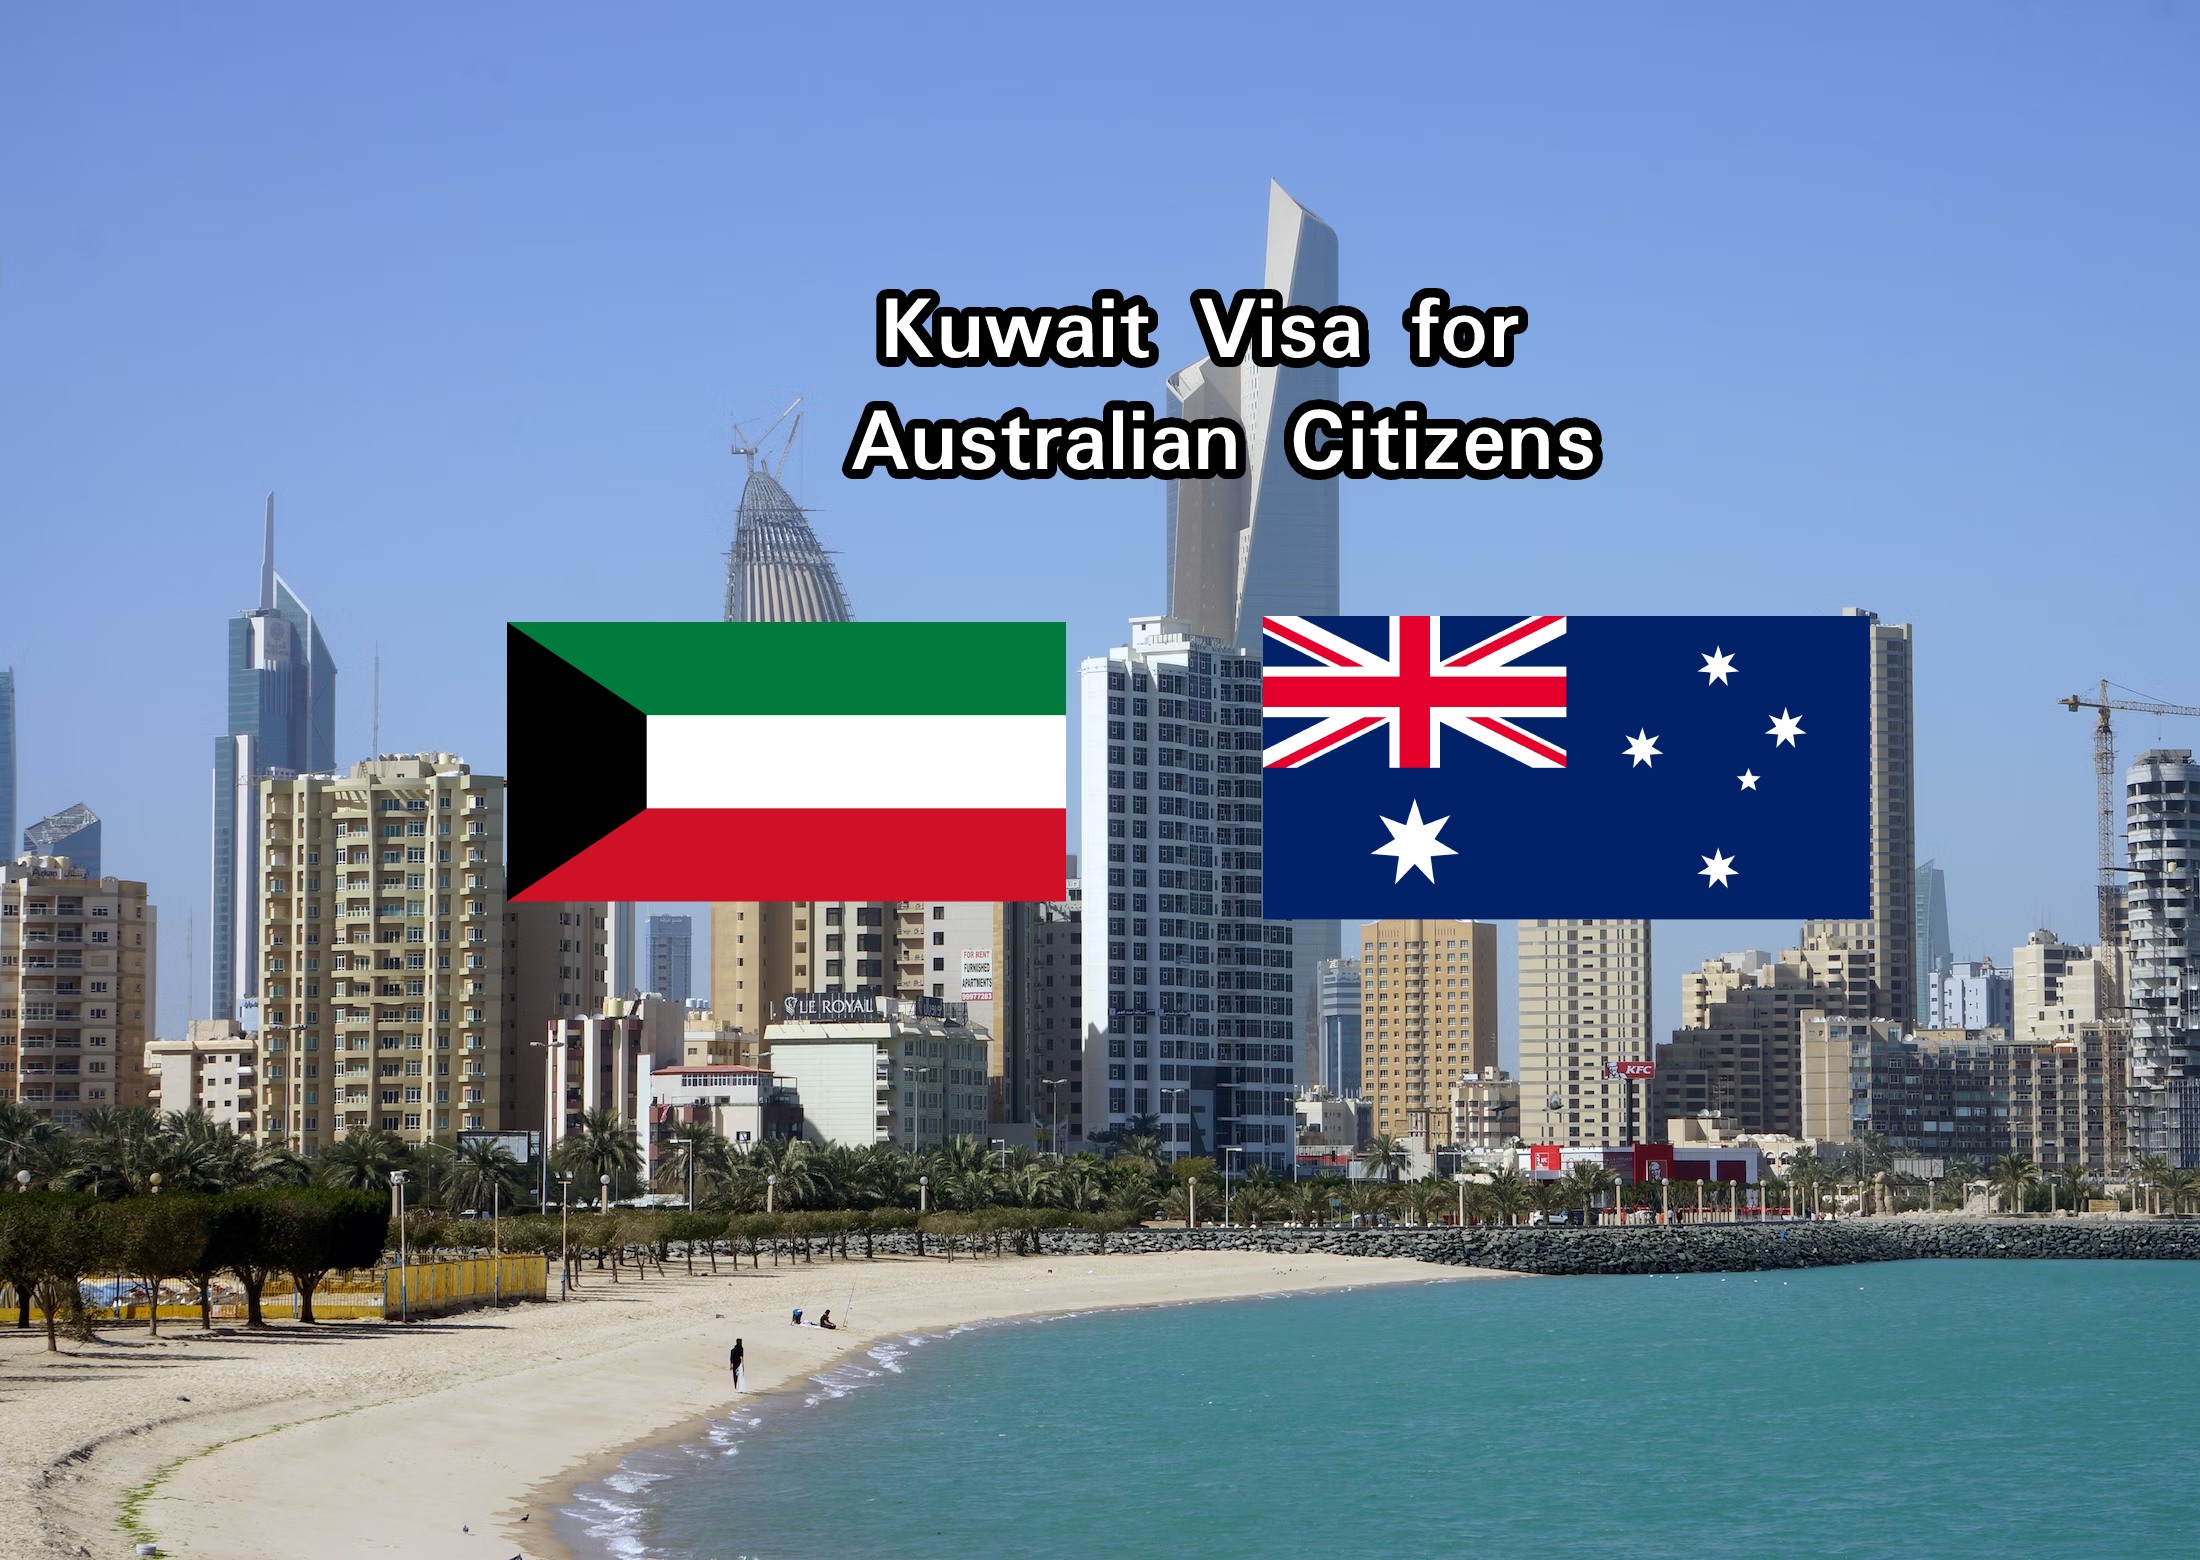 Kuwait Visa for Australian Citizens